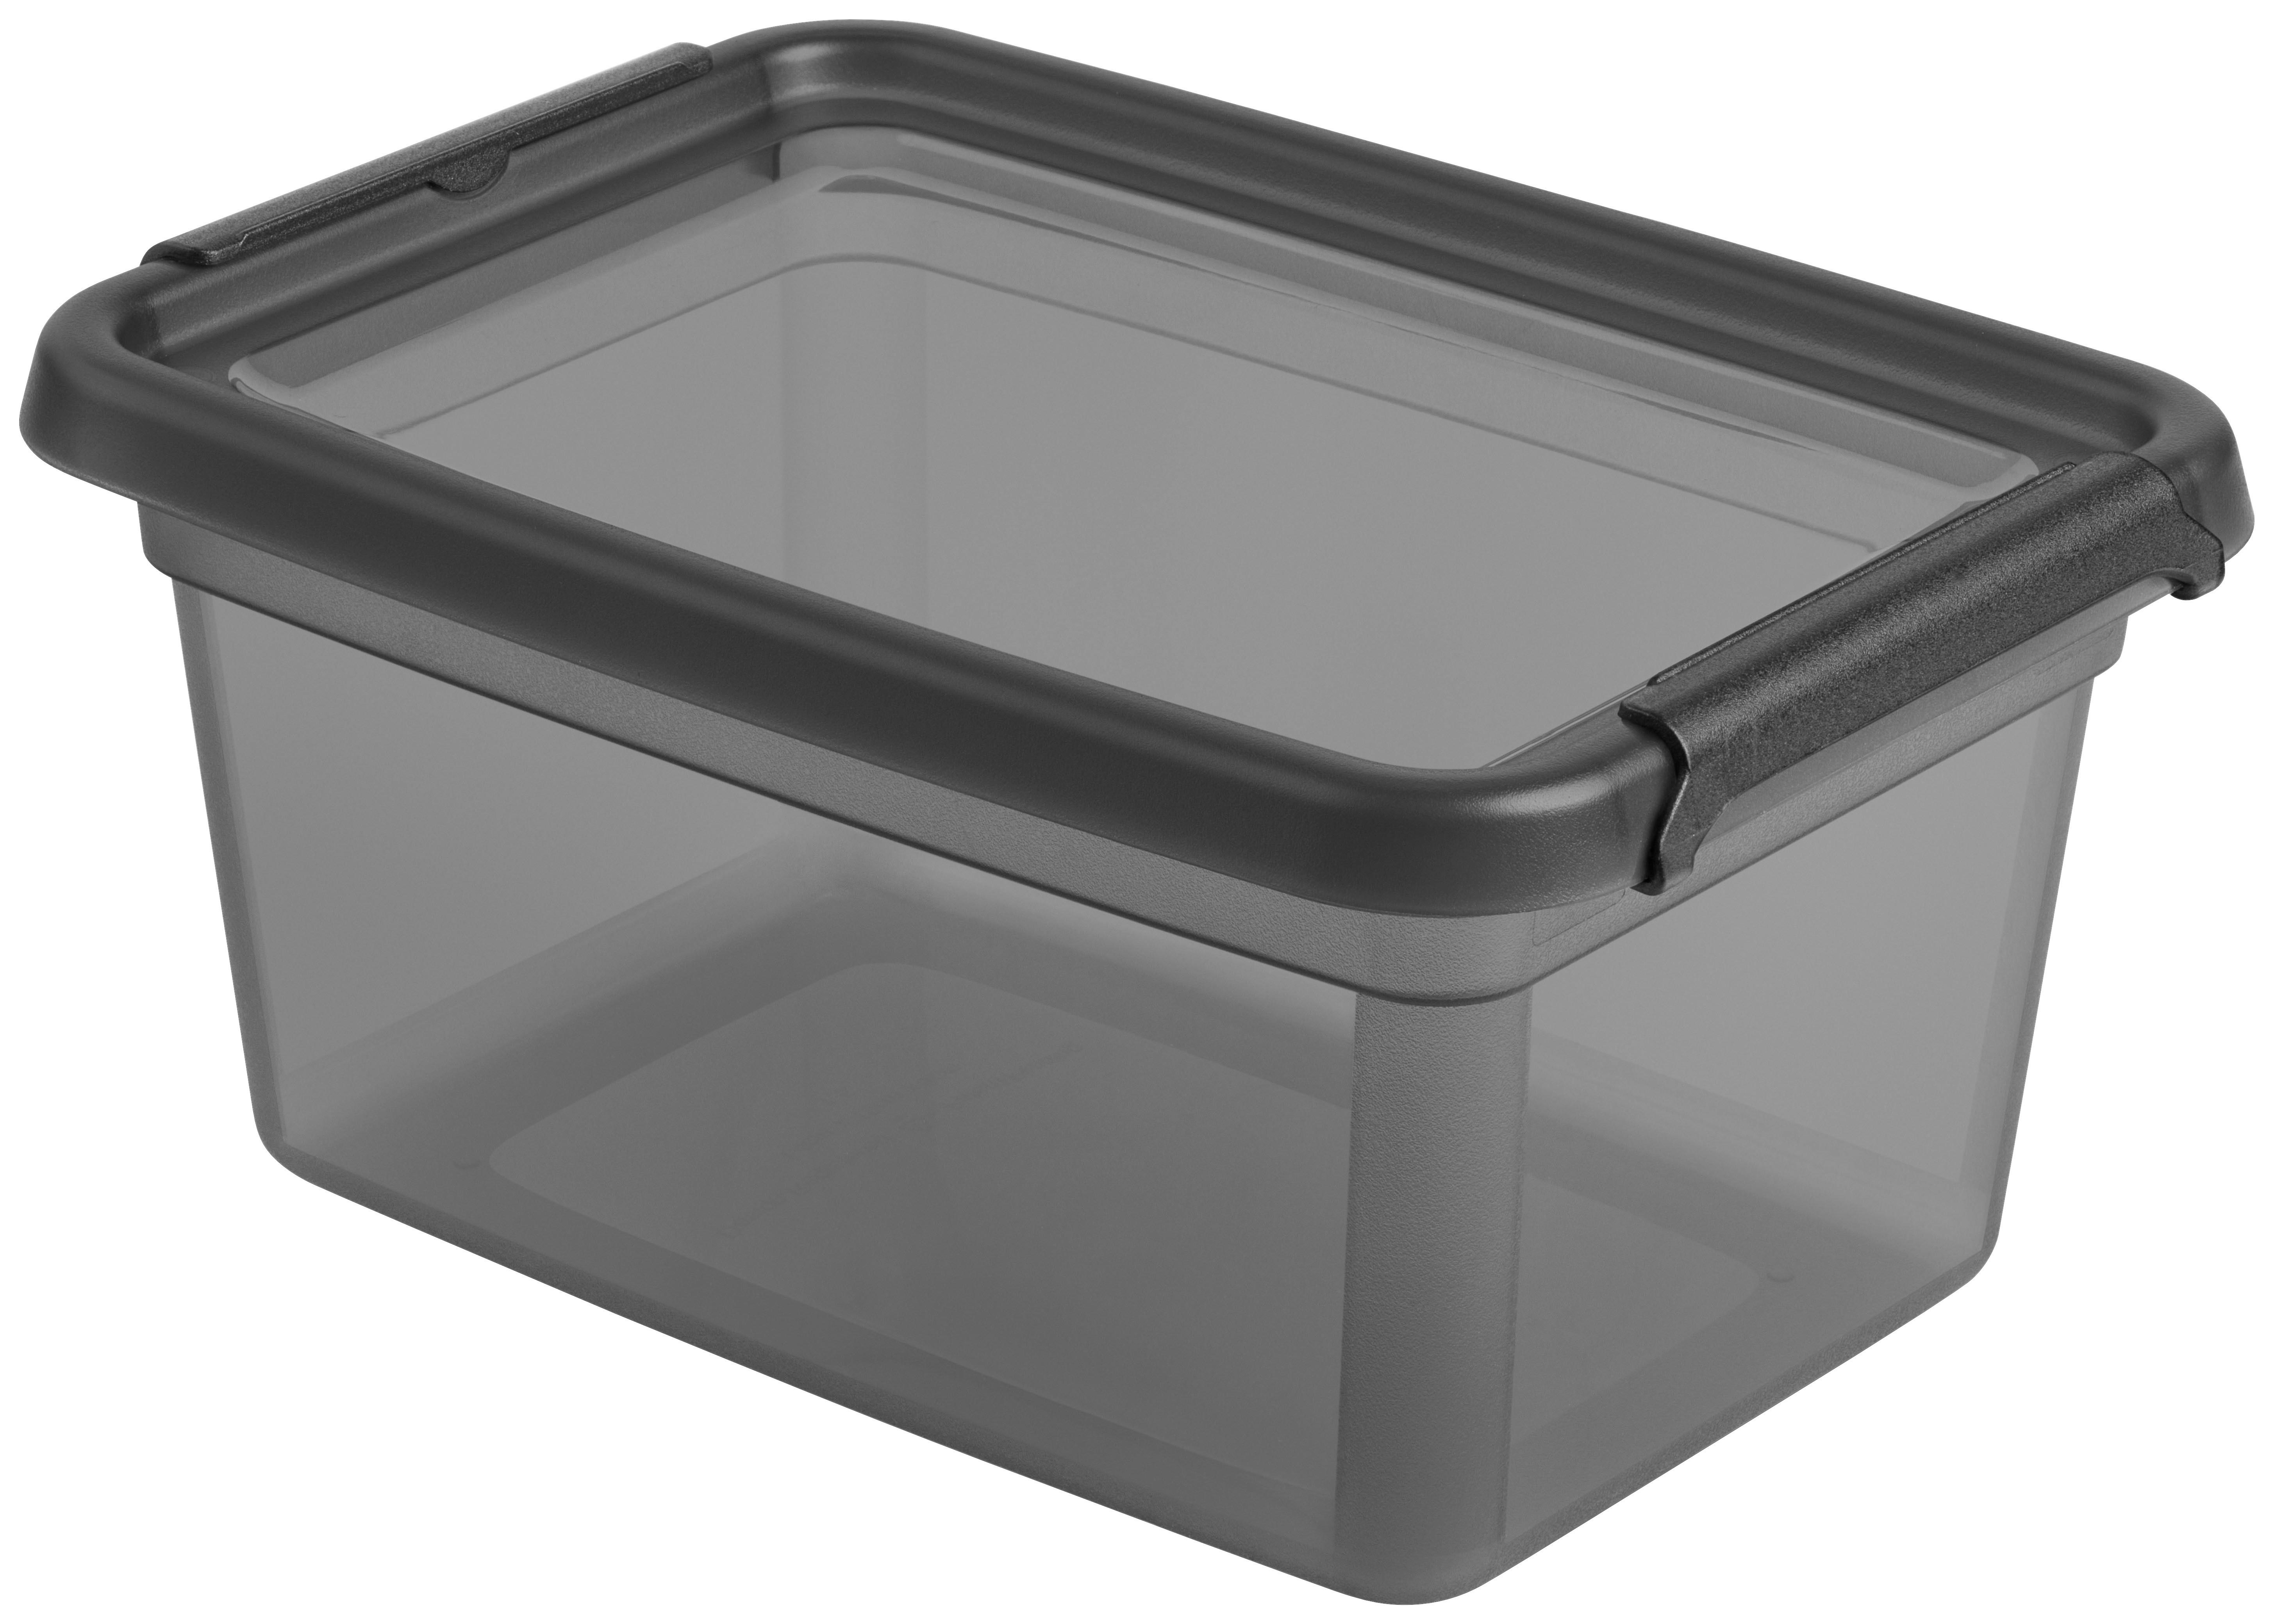 Aufbewahrugsbox Blacky in Schwarz ca. 1,5l - Transparent/Schwarz, Modern, Kunststoff (14/19/9cm) - Premium Living